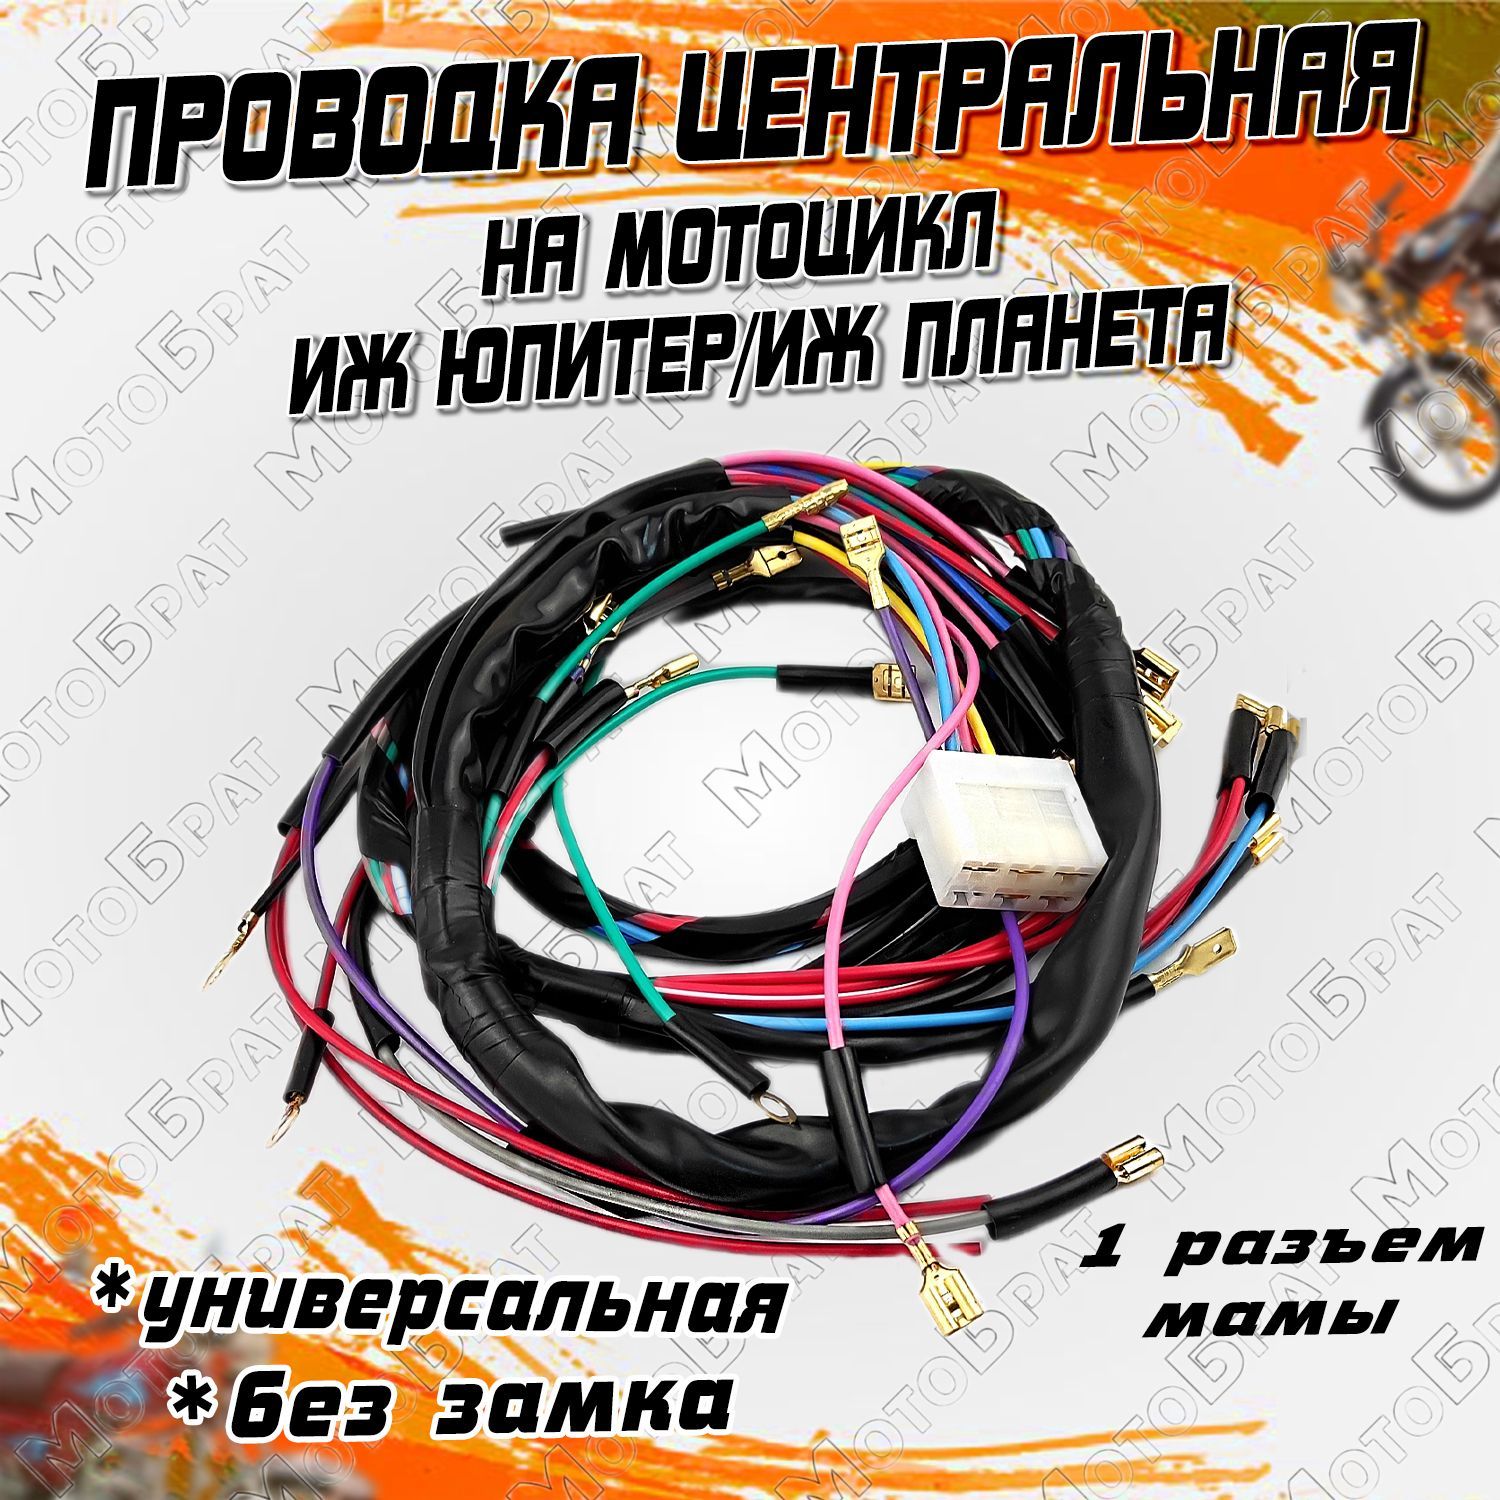 Формула Мото - продажа запасных частей для мотоциклов в Рязани